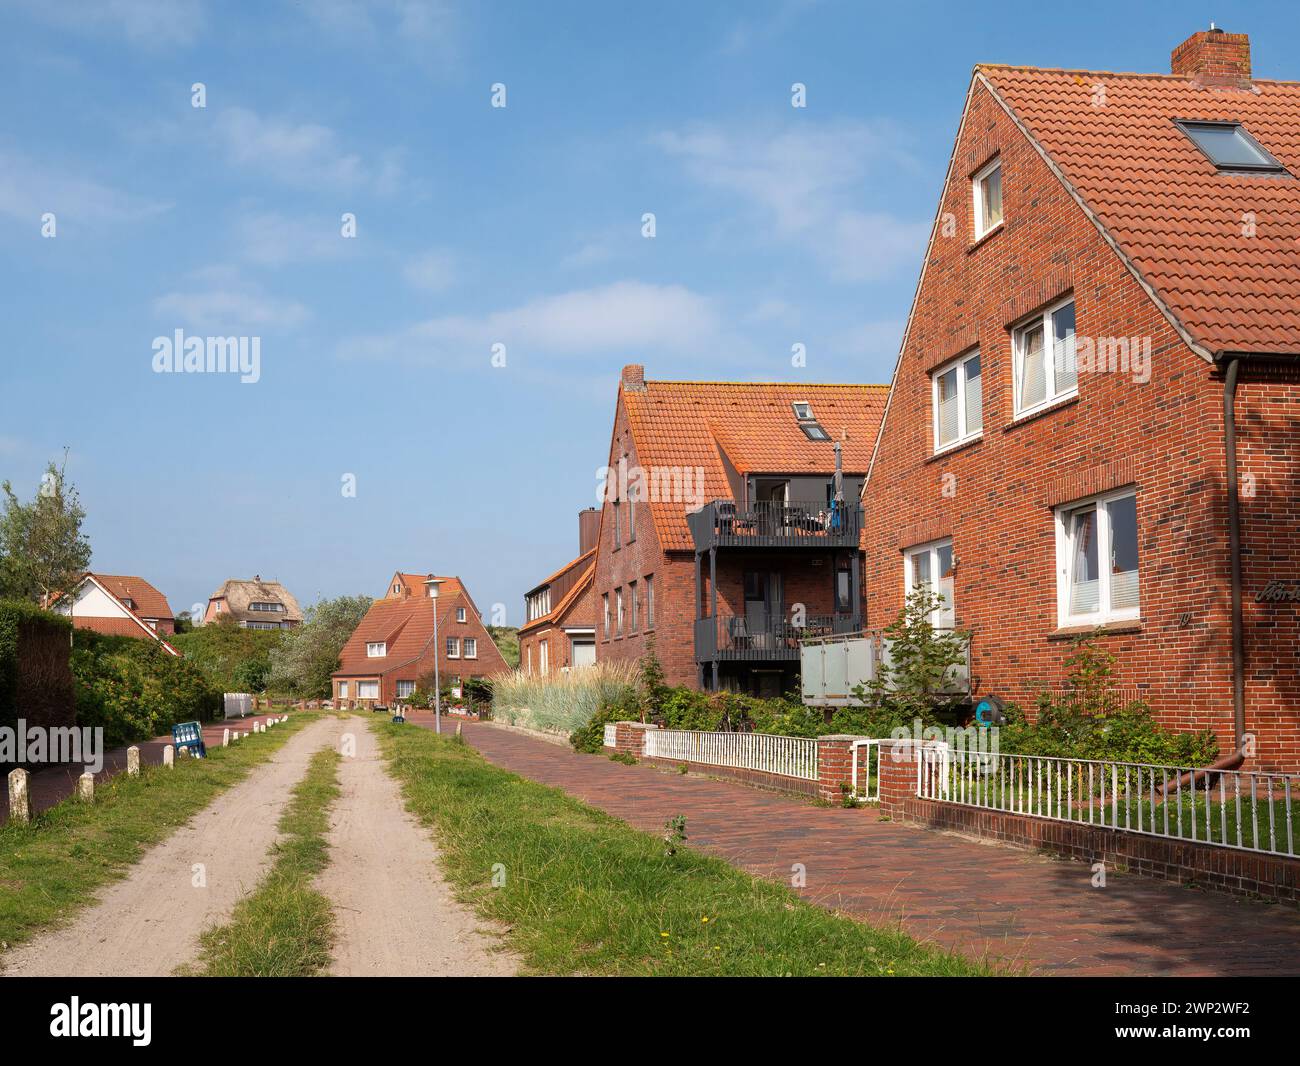 Scena di strada con strada sterrata e case nel villaggio dell'isola della Frisia orientale Juist, bassa Sassonia, Germania Foto Stock